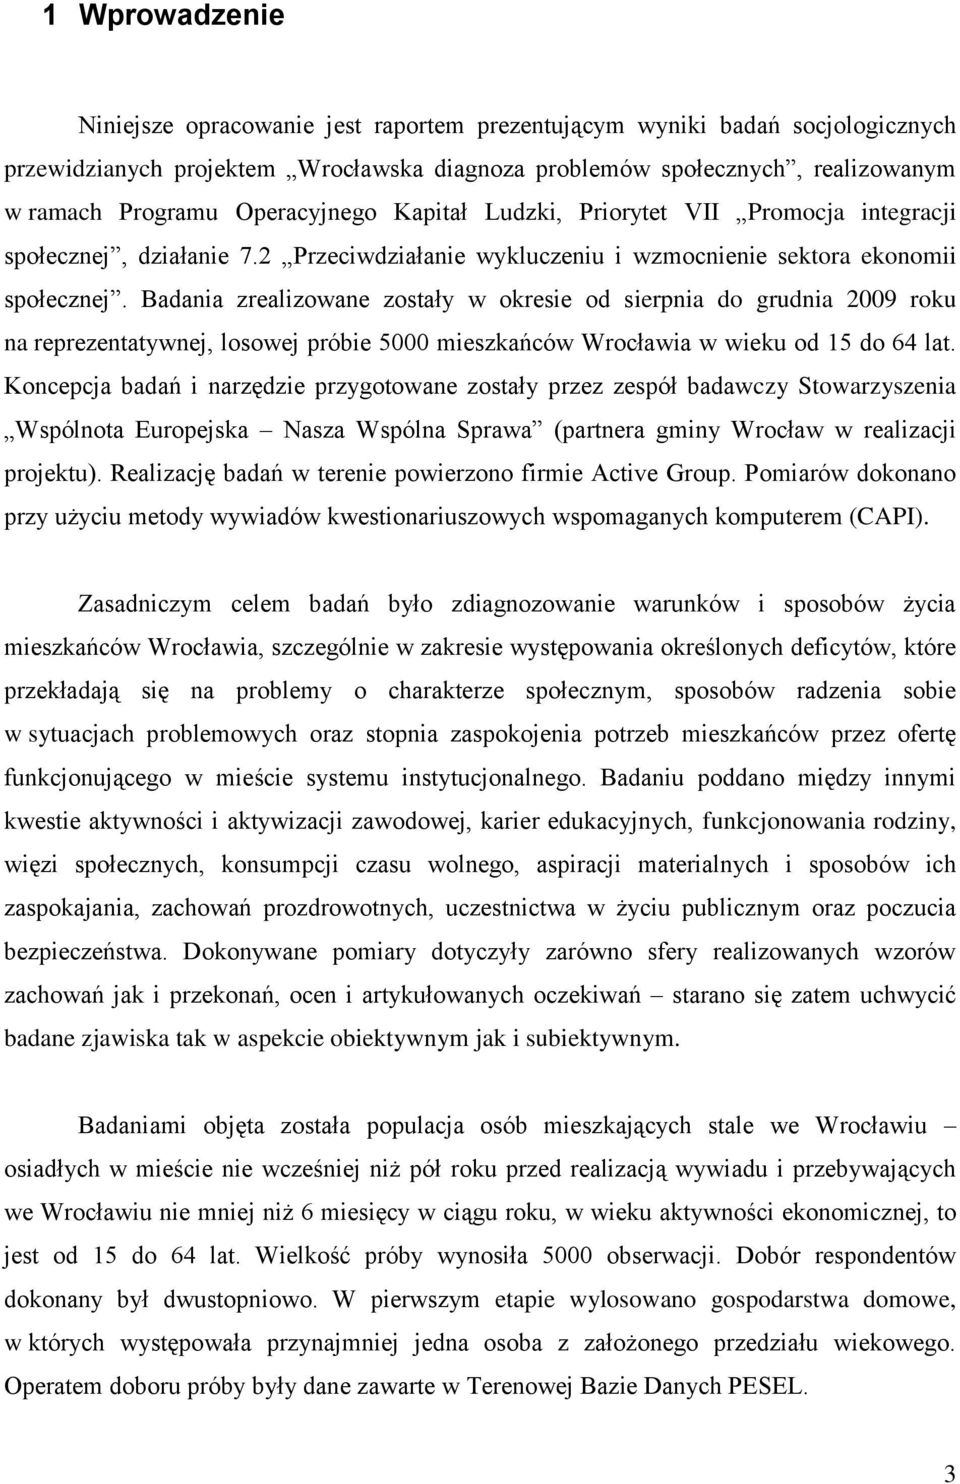 Badania zrealizowane zostały w okresie od sierpnia do grudnia 2009 roku na reprezentatywnej, losowej próbie 5000 mieszkańców Wrocławia w wieku od 15 do 64 lat.